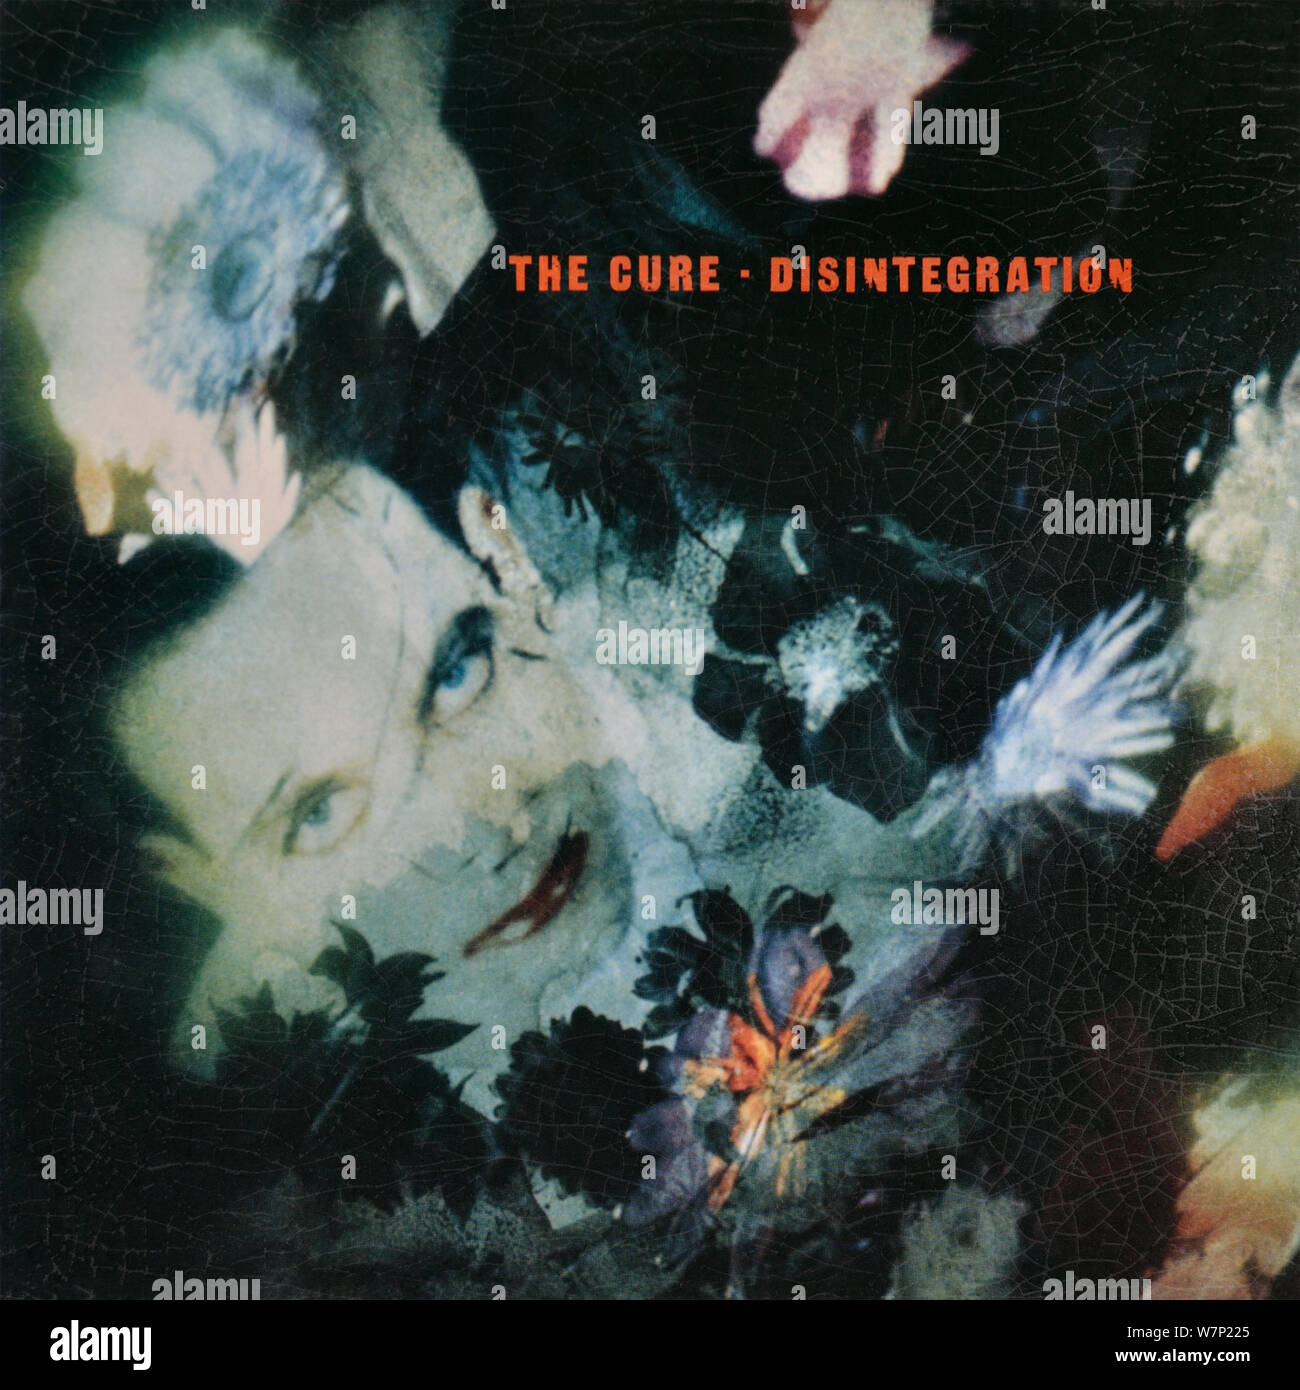 The Cure - copertina originale in vinile - disintegrazione - 1989 Foto Stock